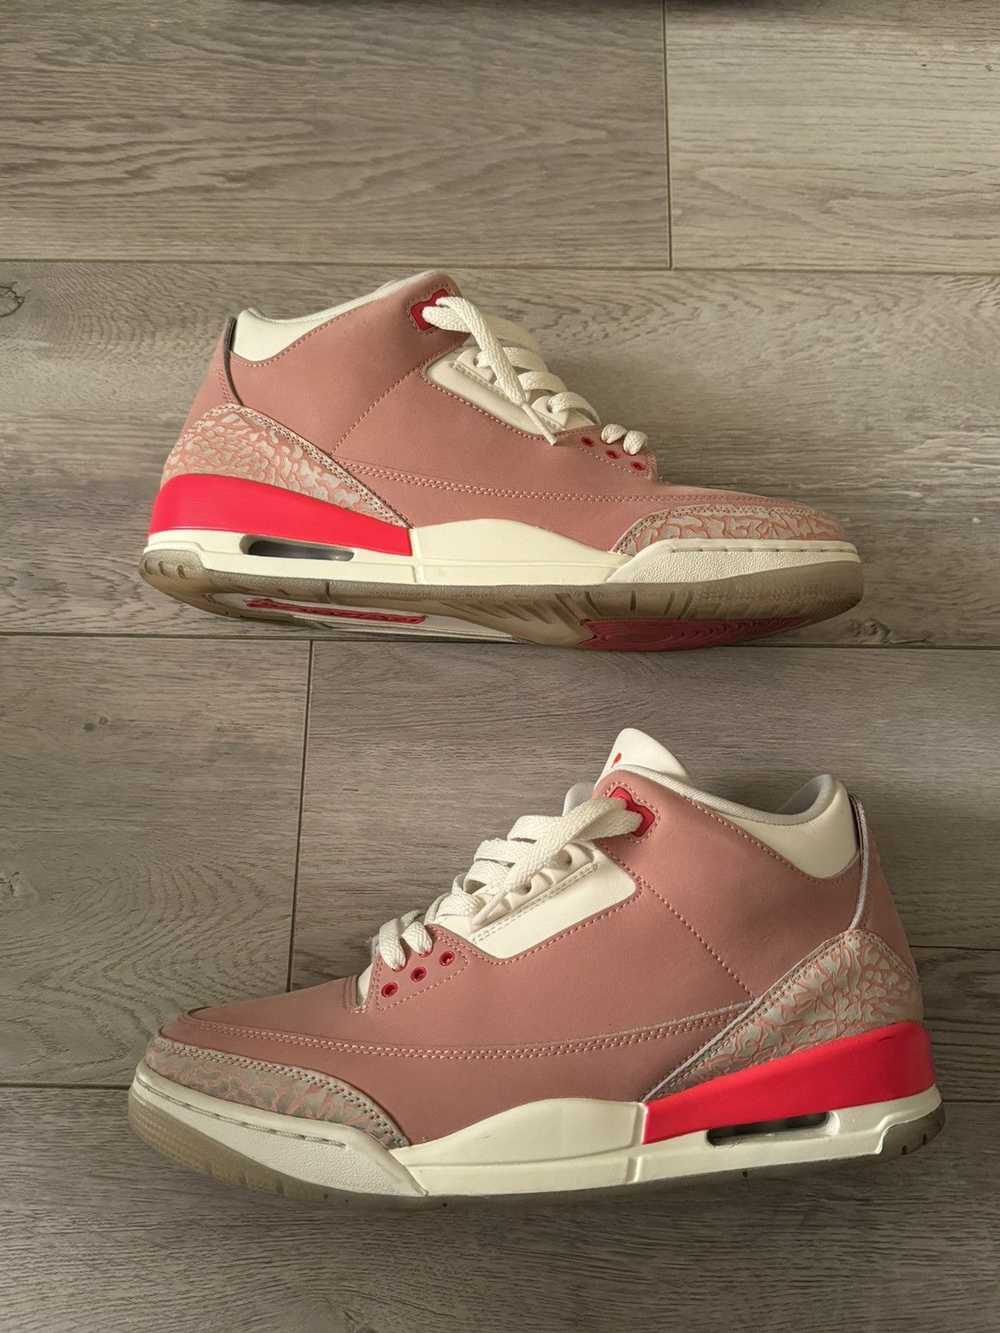 Jordan Brand × Nike Air Jordan 3 “Rust Pink” - image 4